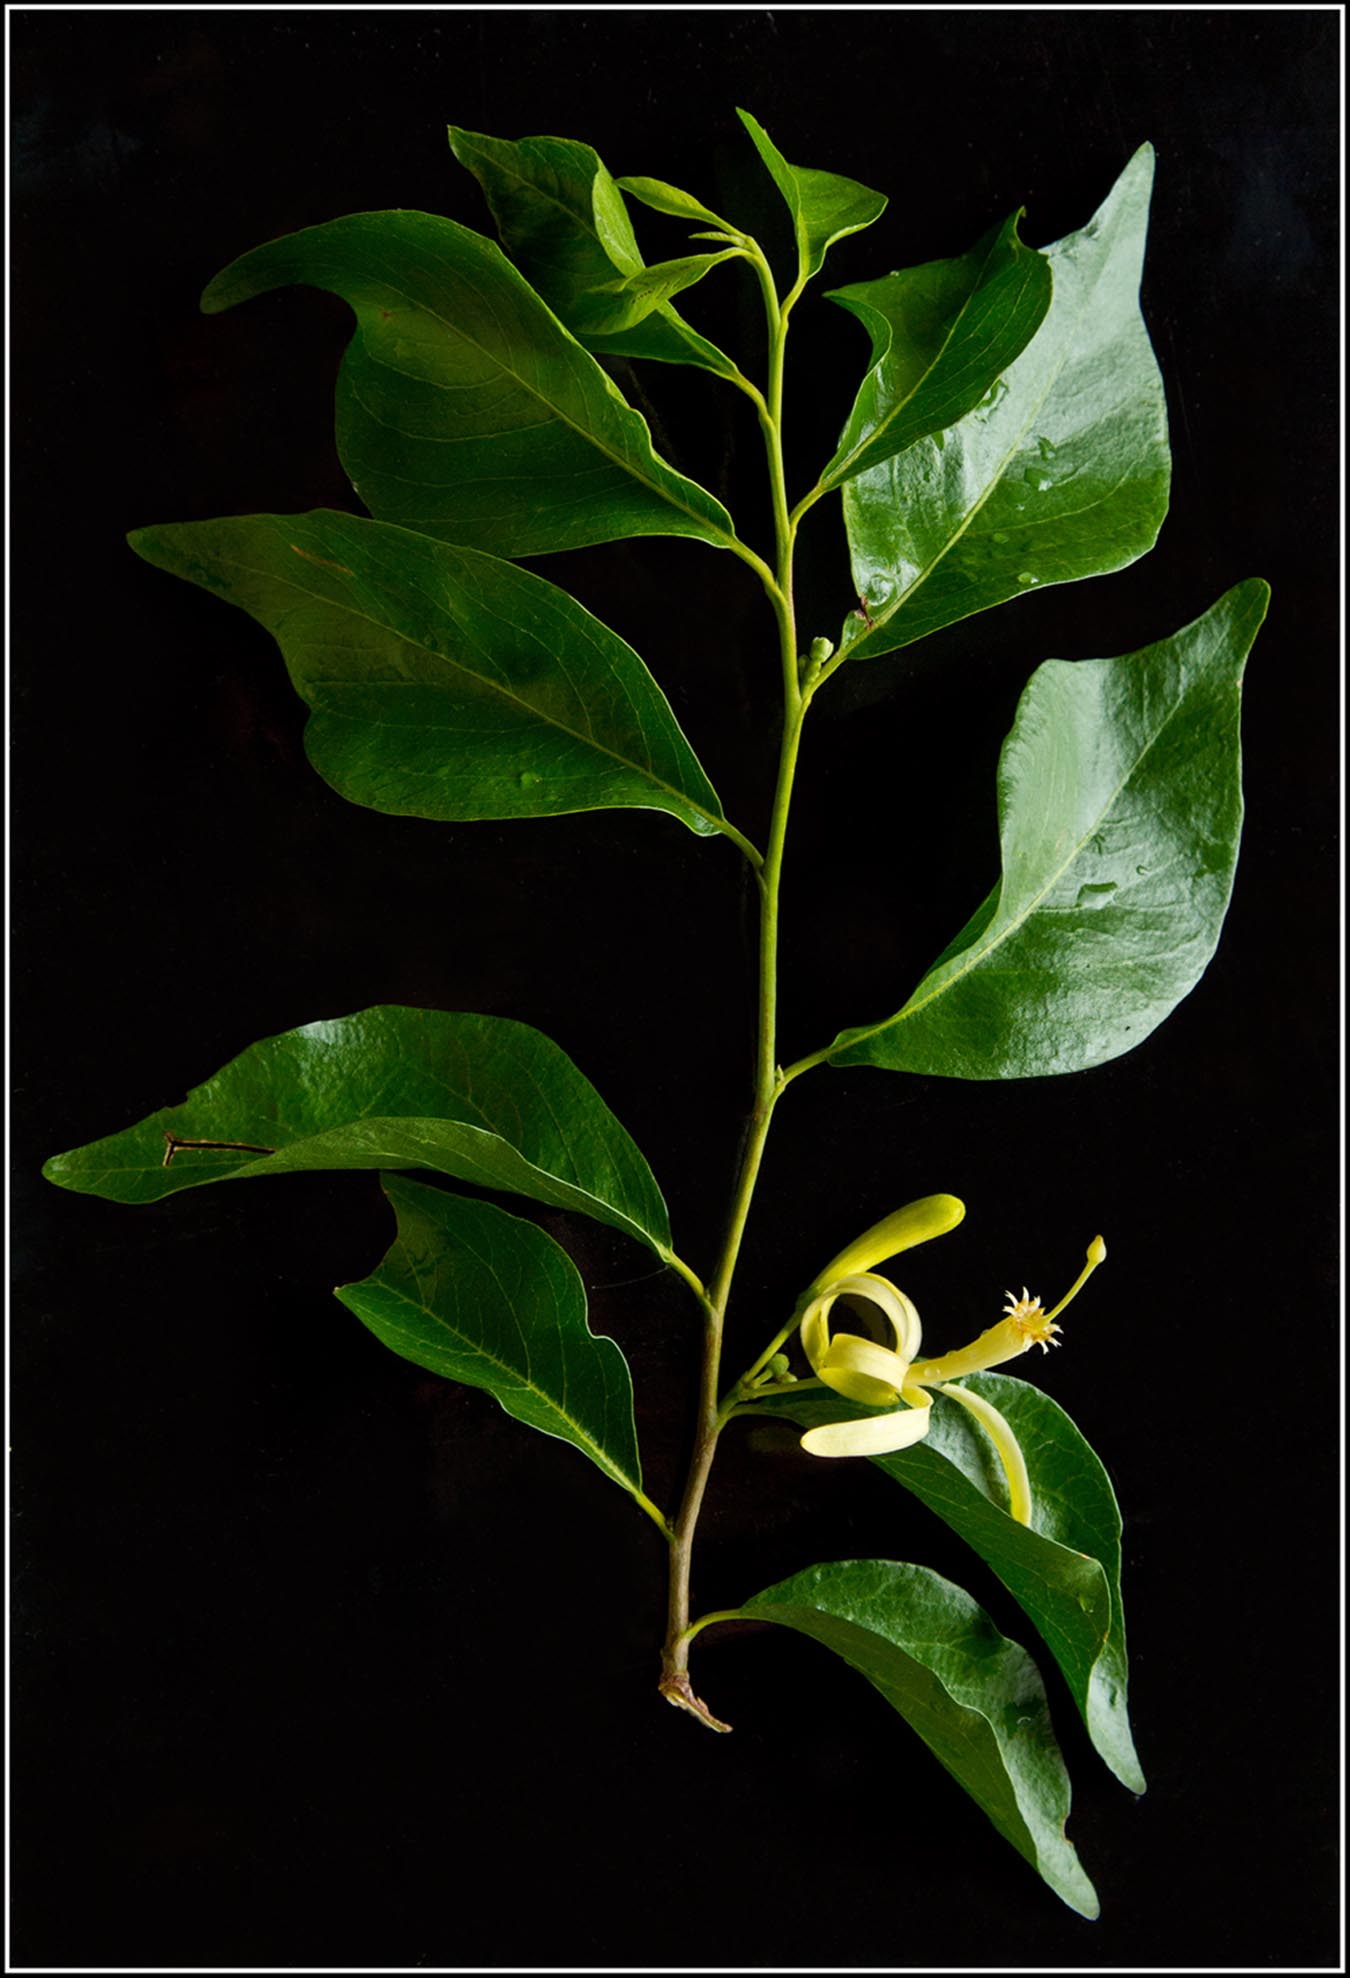 Turraea fischeri subsp. eylesii